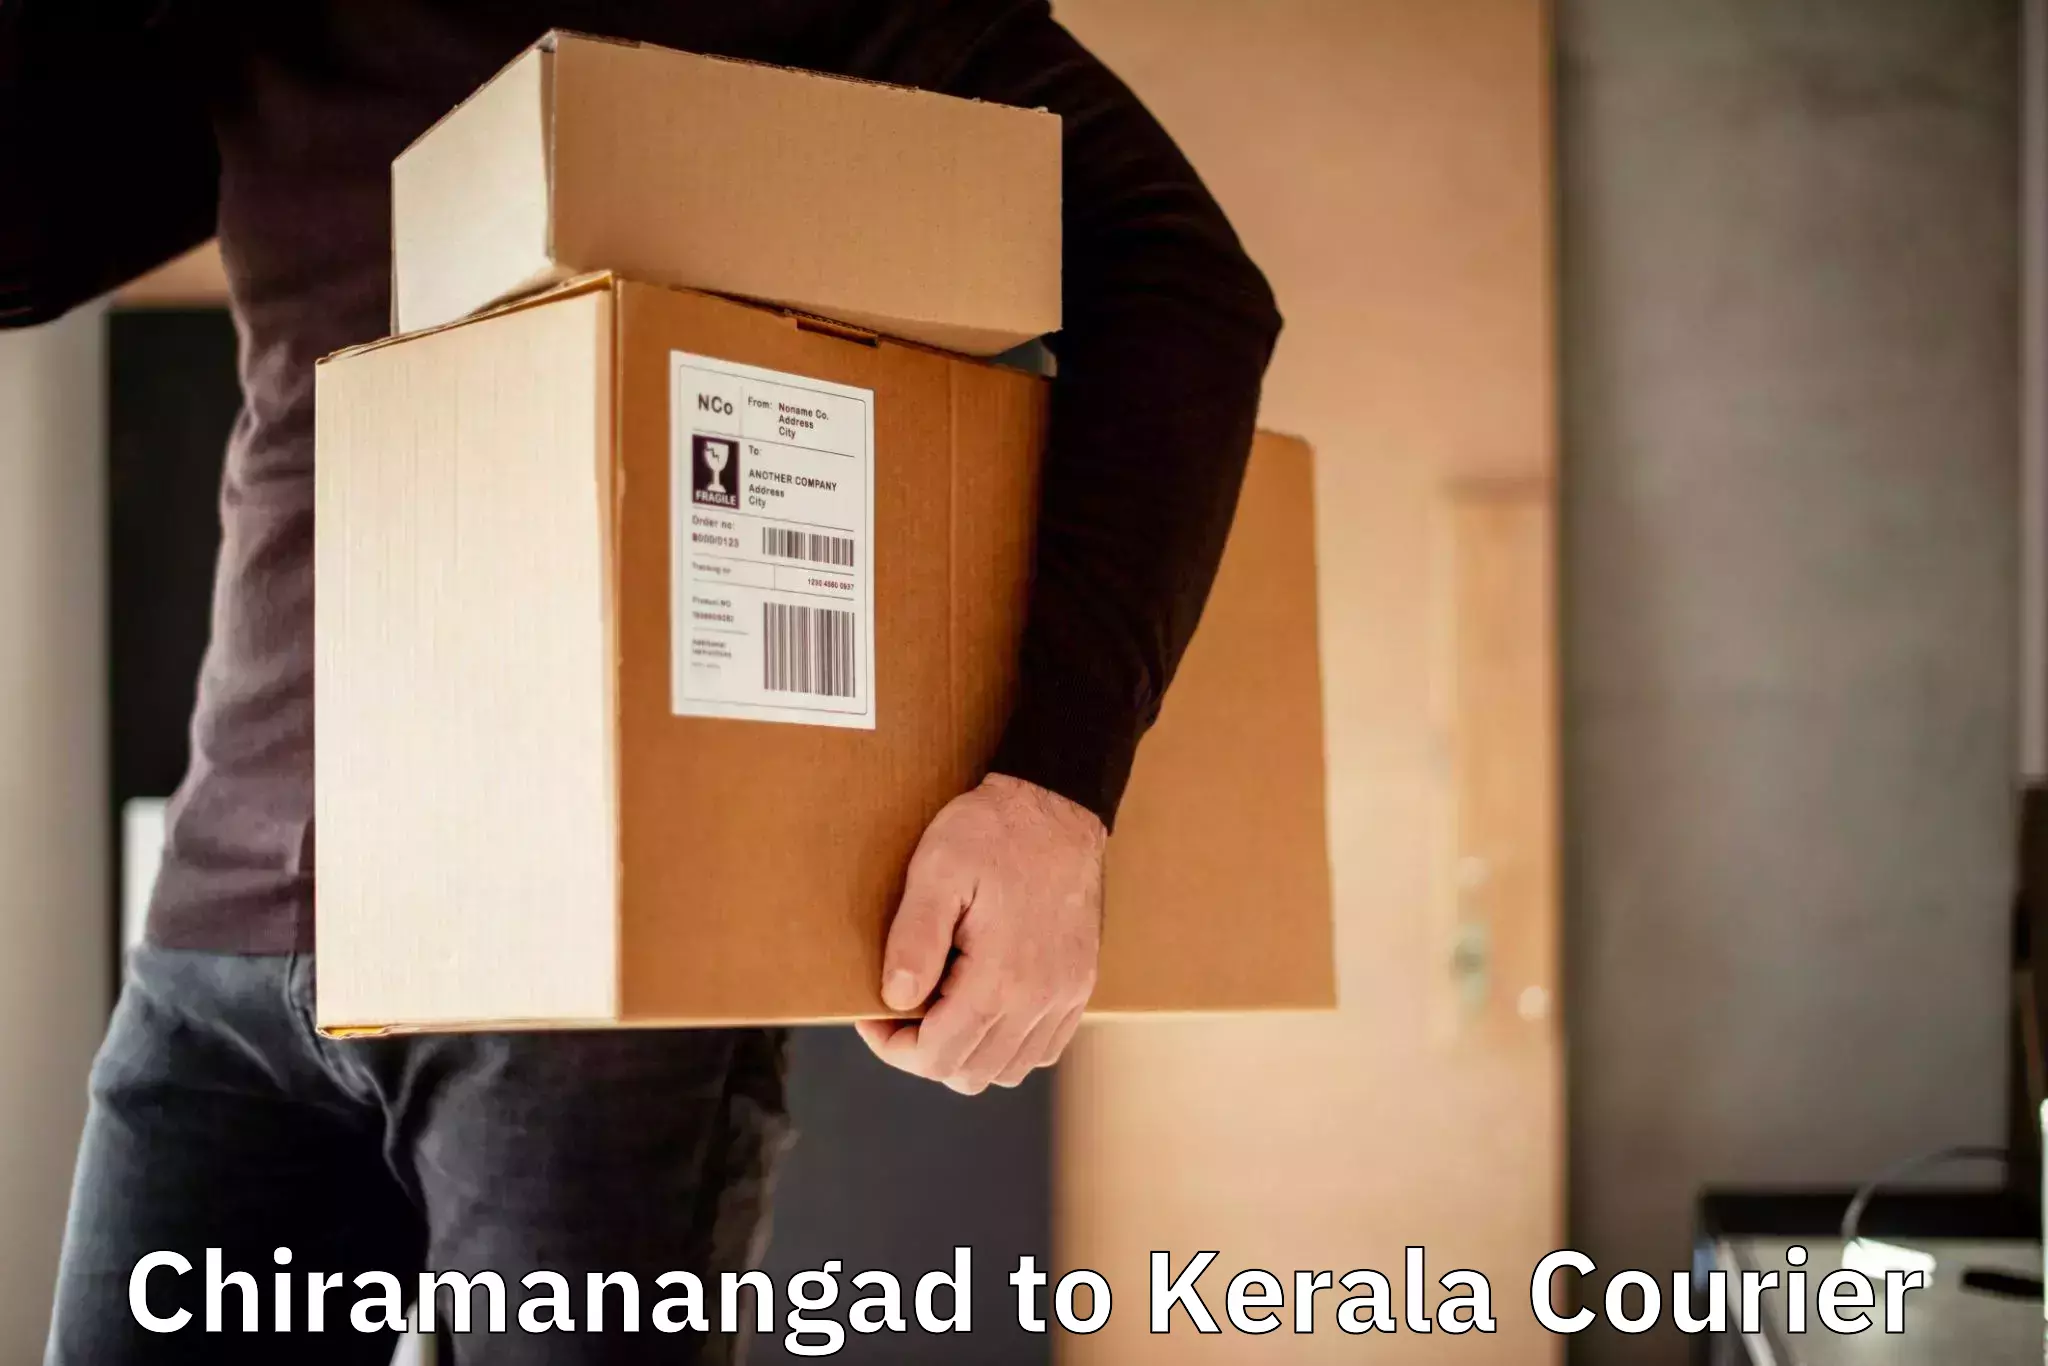 Professional courier handling Chiramanangad to Kazhakkoottam